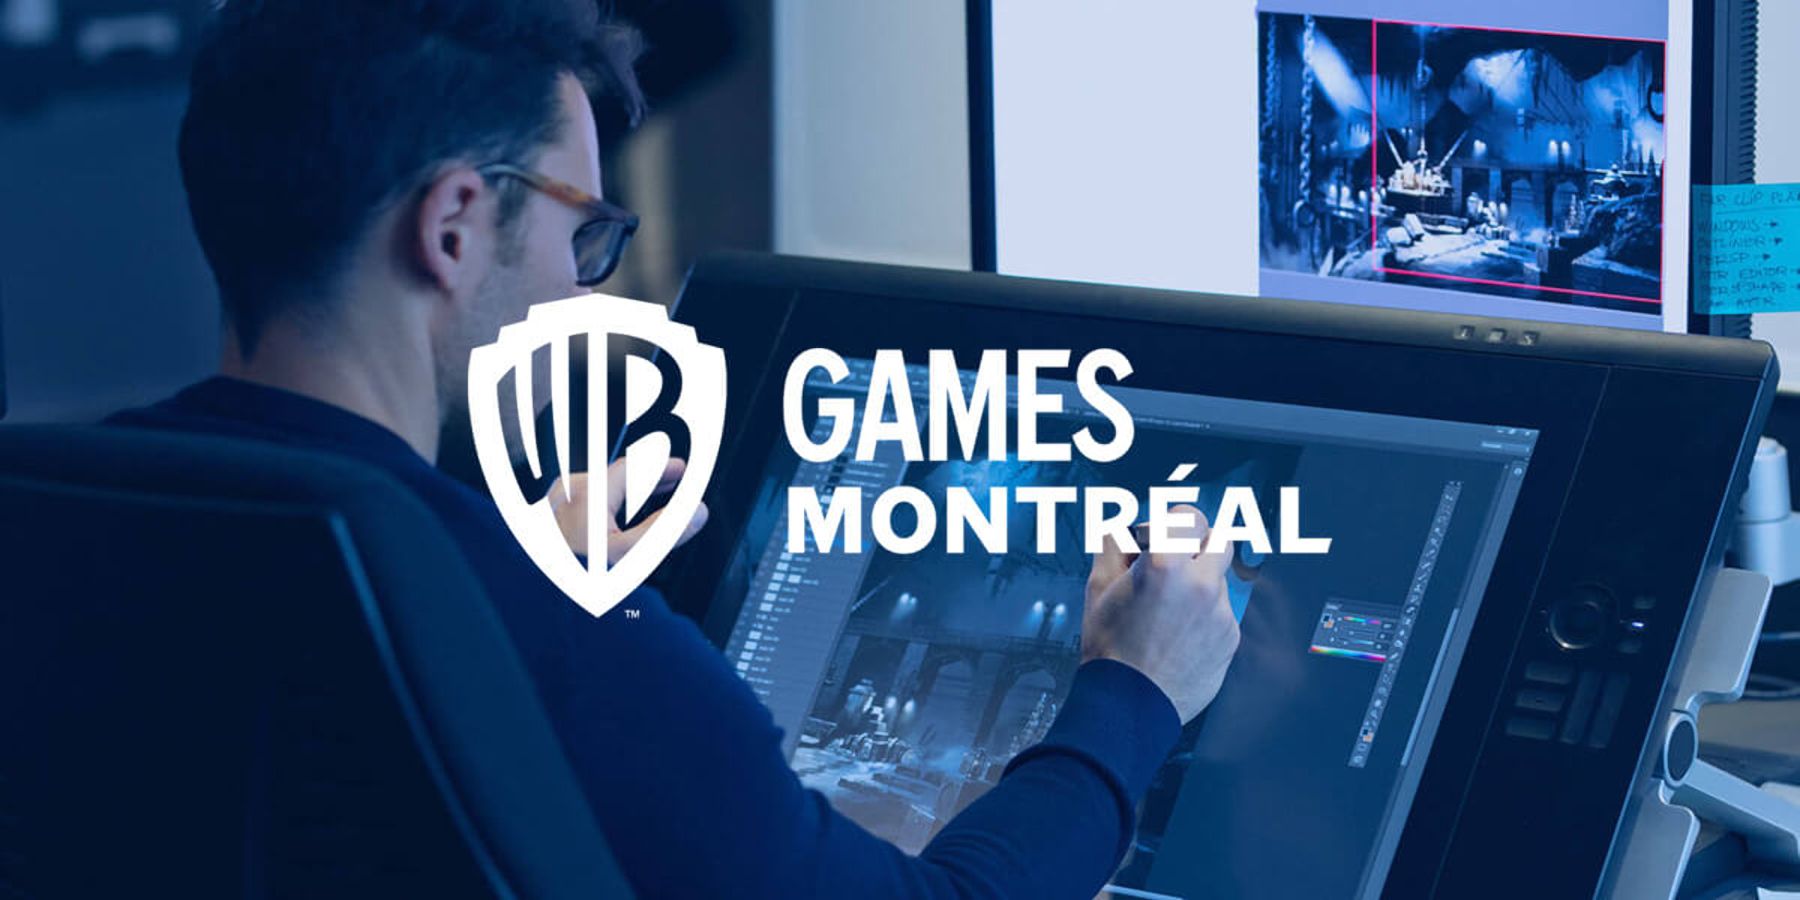 WB Games Montréal added a new photo. - WB Games Montréal